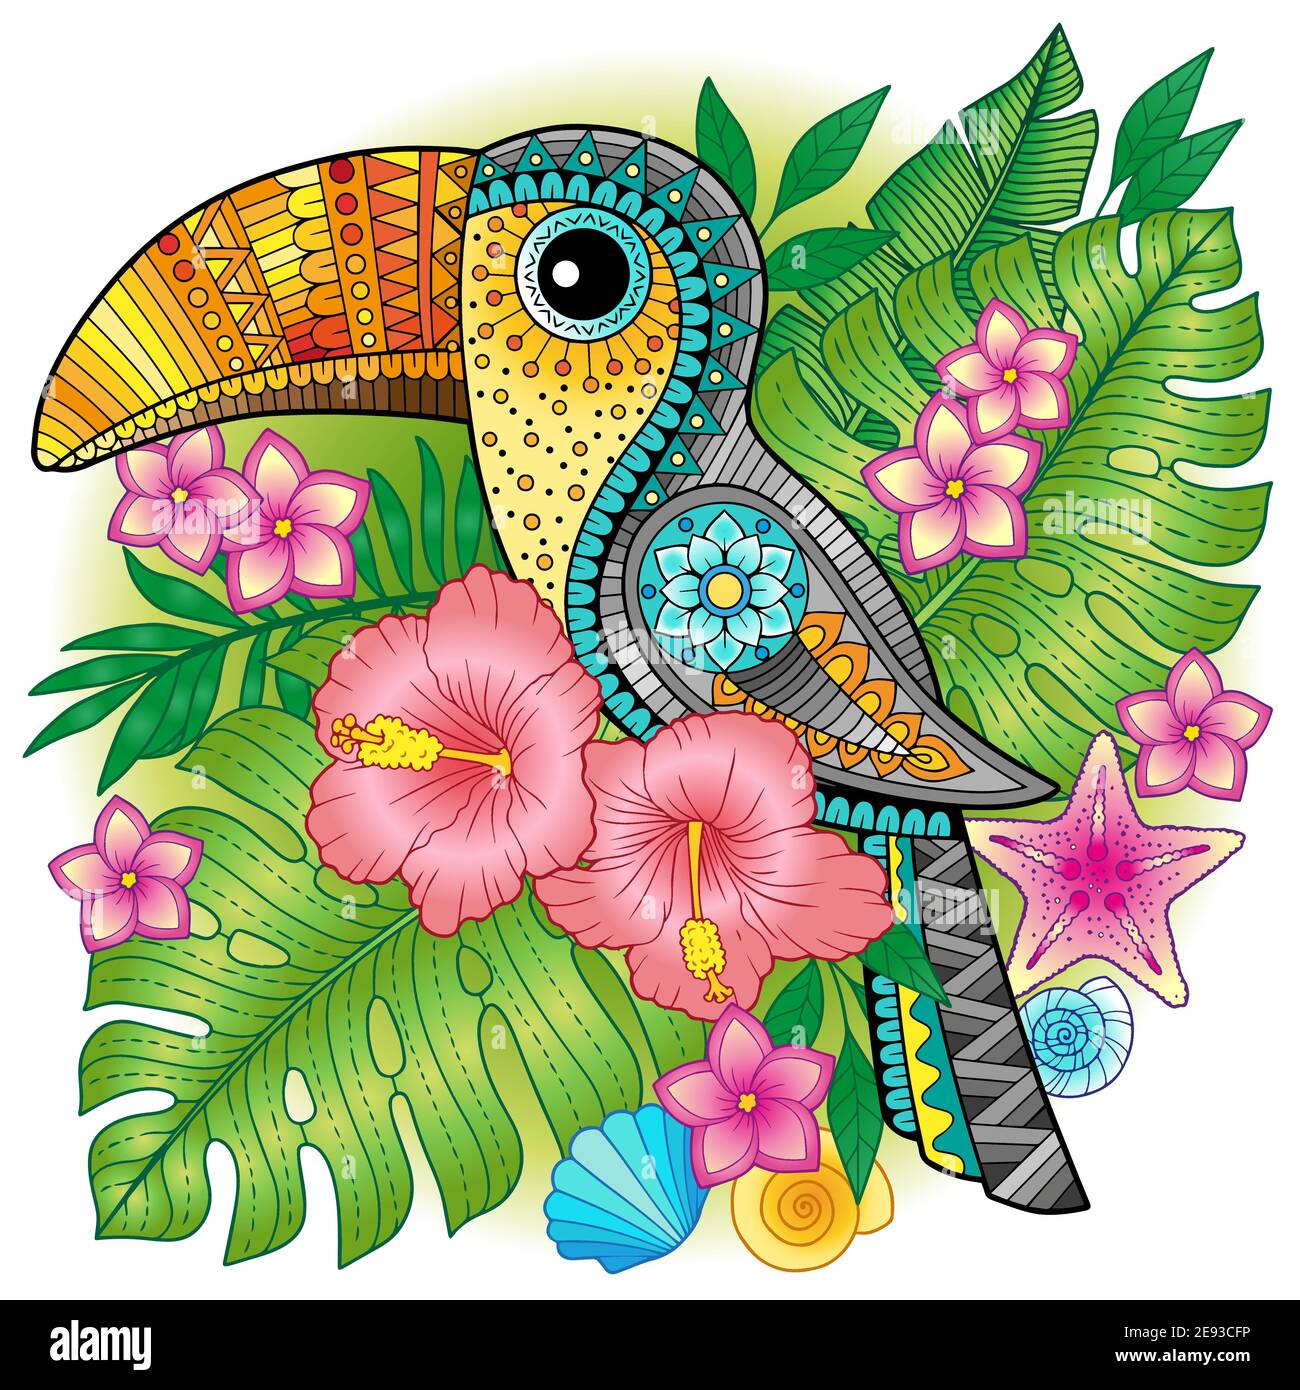 Un luminoso toucan decorativo tra piante esotiche e fiori. Immagine vettoriale per la stampa su abiti, tessuti, poster, inviti Illustrazione Vettoriale